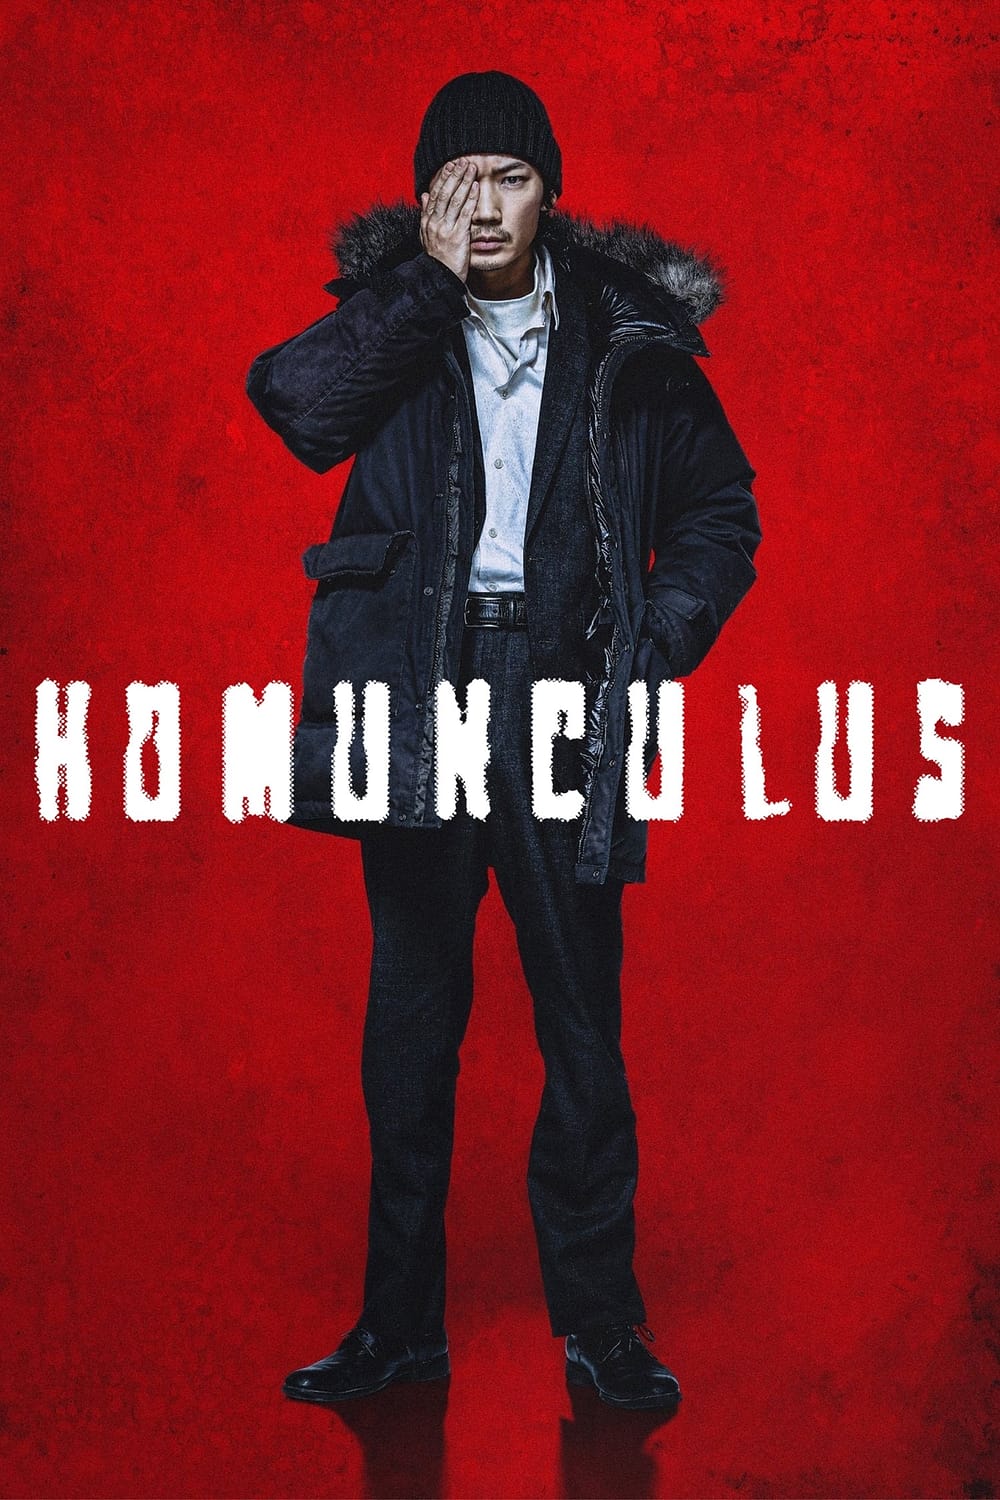 Homunculus ฮามังคิวลัส (2021)